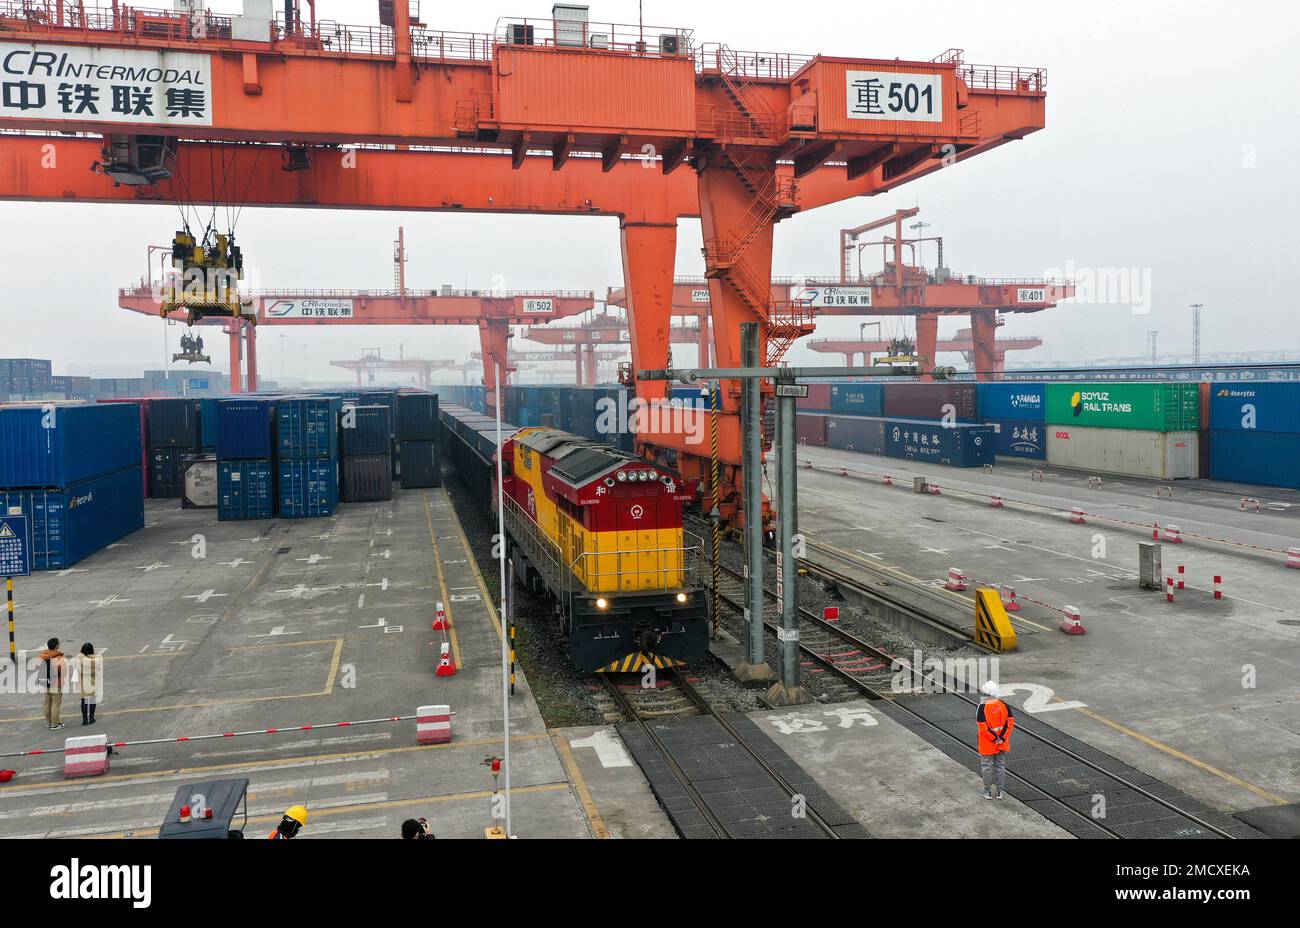 (230122) -- CHONGQING, 22. Januar 2023 (Xinhua) -- Dieses Luftfoto zeigt einen intermodalen Schienen-See-Güterzug, der Container mit Gütern transportiert, einschließlich Autos, Motorrädern, Motoren und Natriumcarbonat, Am Tuanjie Village Central Station im Südwesten Chinas Chongqing, 22. Januar 2023. Im Jahr des Hasen war es der erste Güterzug des neuen internationalen Land-Meer-Handelskorridors der Stadt. Die Waren im Zug werden zum Hafen von Qinzhou an der Südküste des Landes transportiert, von wo aus sie nach Indonesien, den Philippinen, Australien und einigen anderen Ländern und Regionen geliefert werden Stockfoto